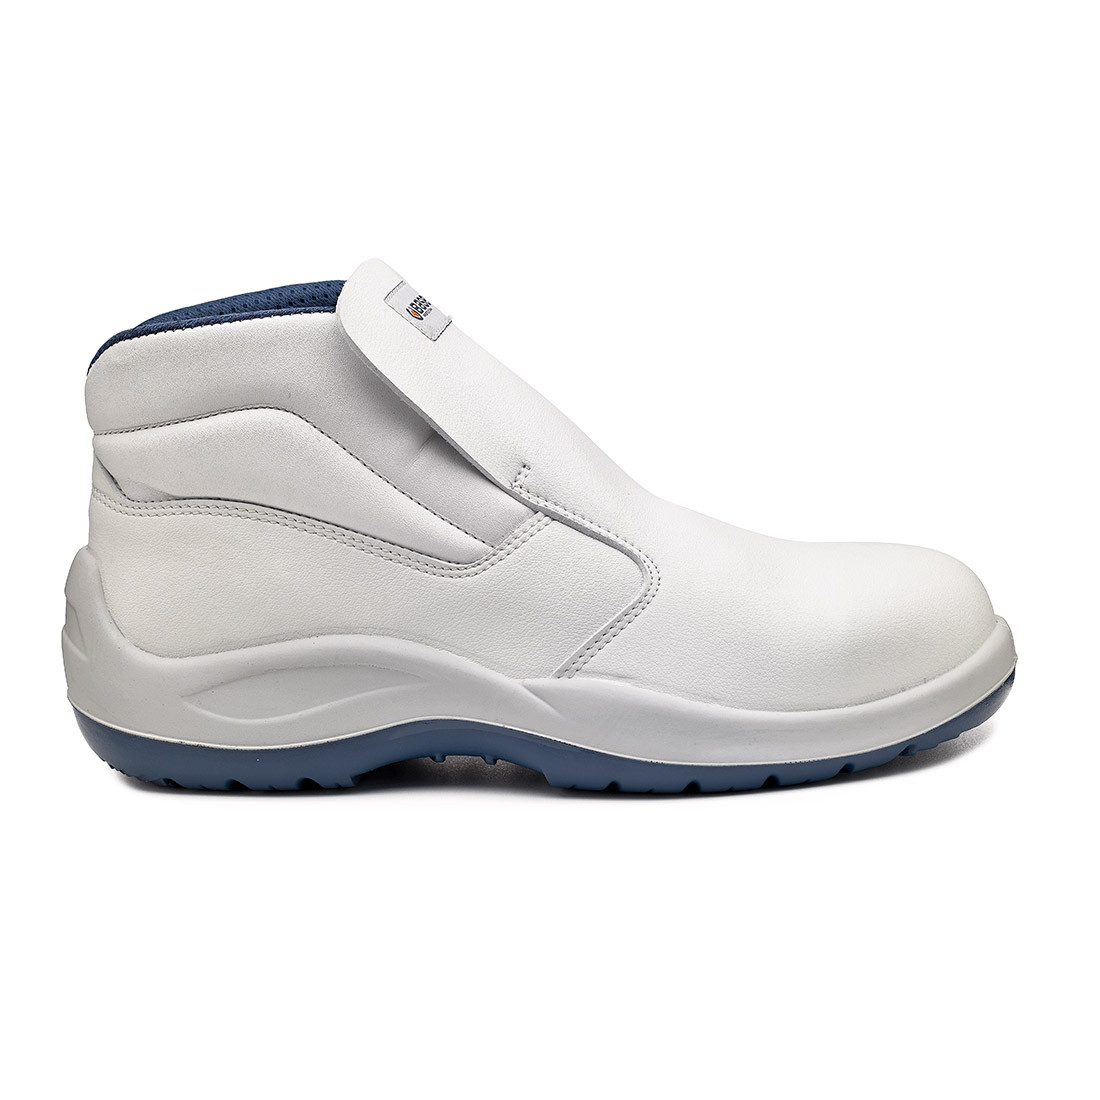 Vanadio Ankle Boot S2 SRC - Les chaussures de protection